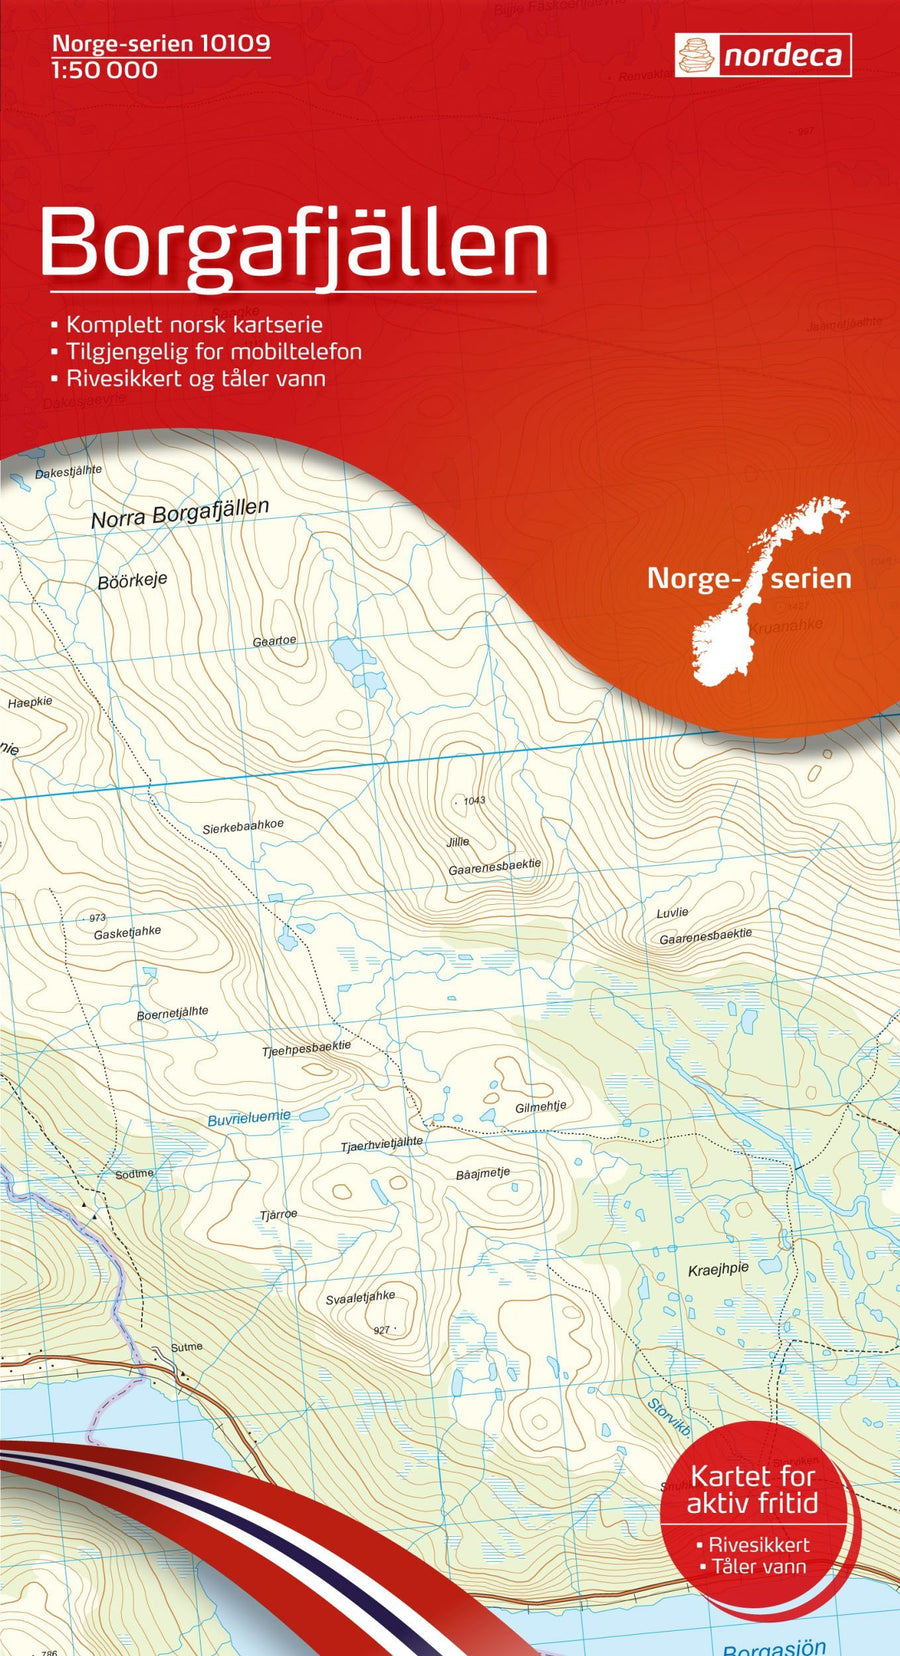 Carte de randonnée n° 10109 - Borgafjallen (Norvège) | Nordeca - Norge-serien carte pliée Nordeca 